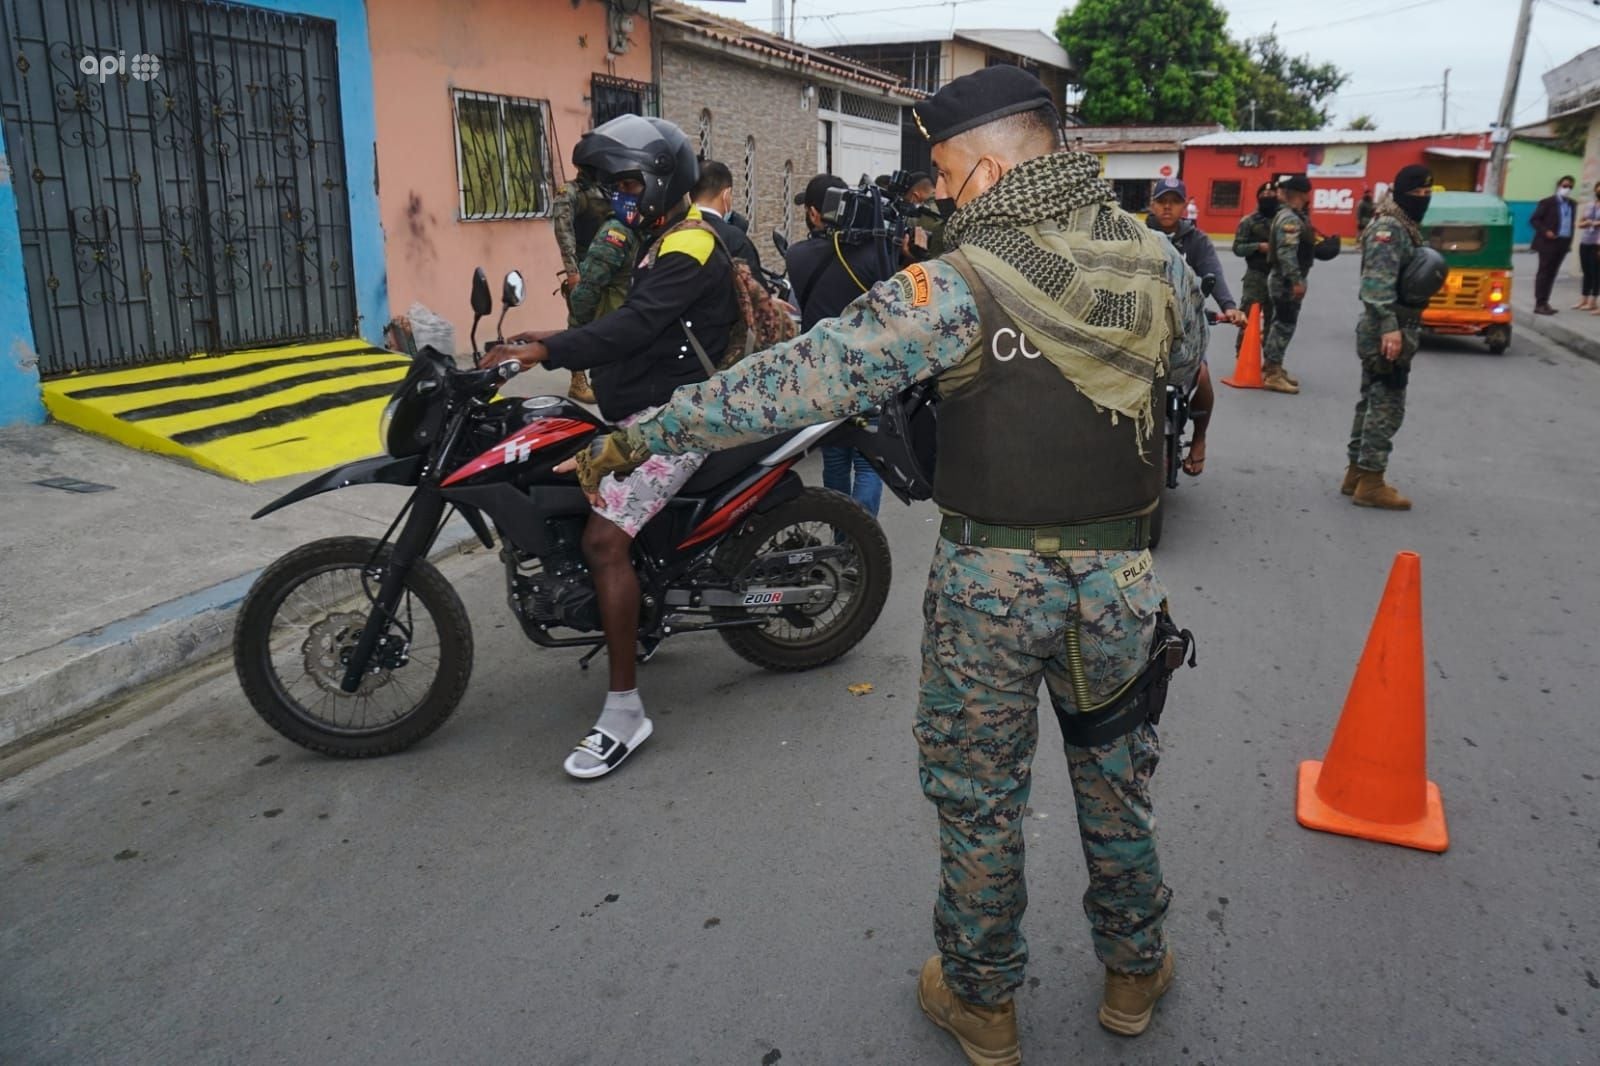 Gobierno de Estados Unidos emite alerta por casos de violencia criminal en el sur de Guayaquil